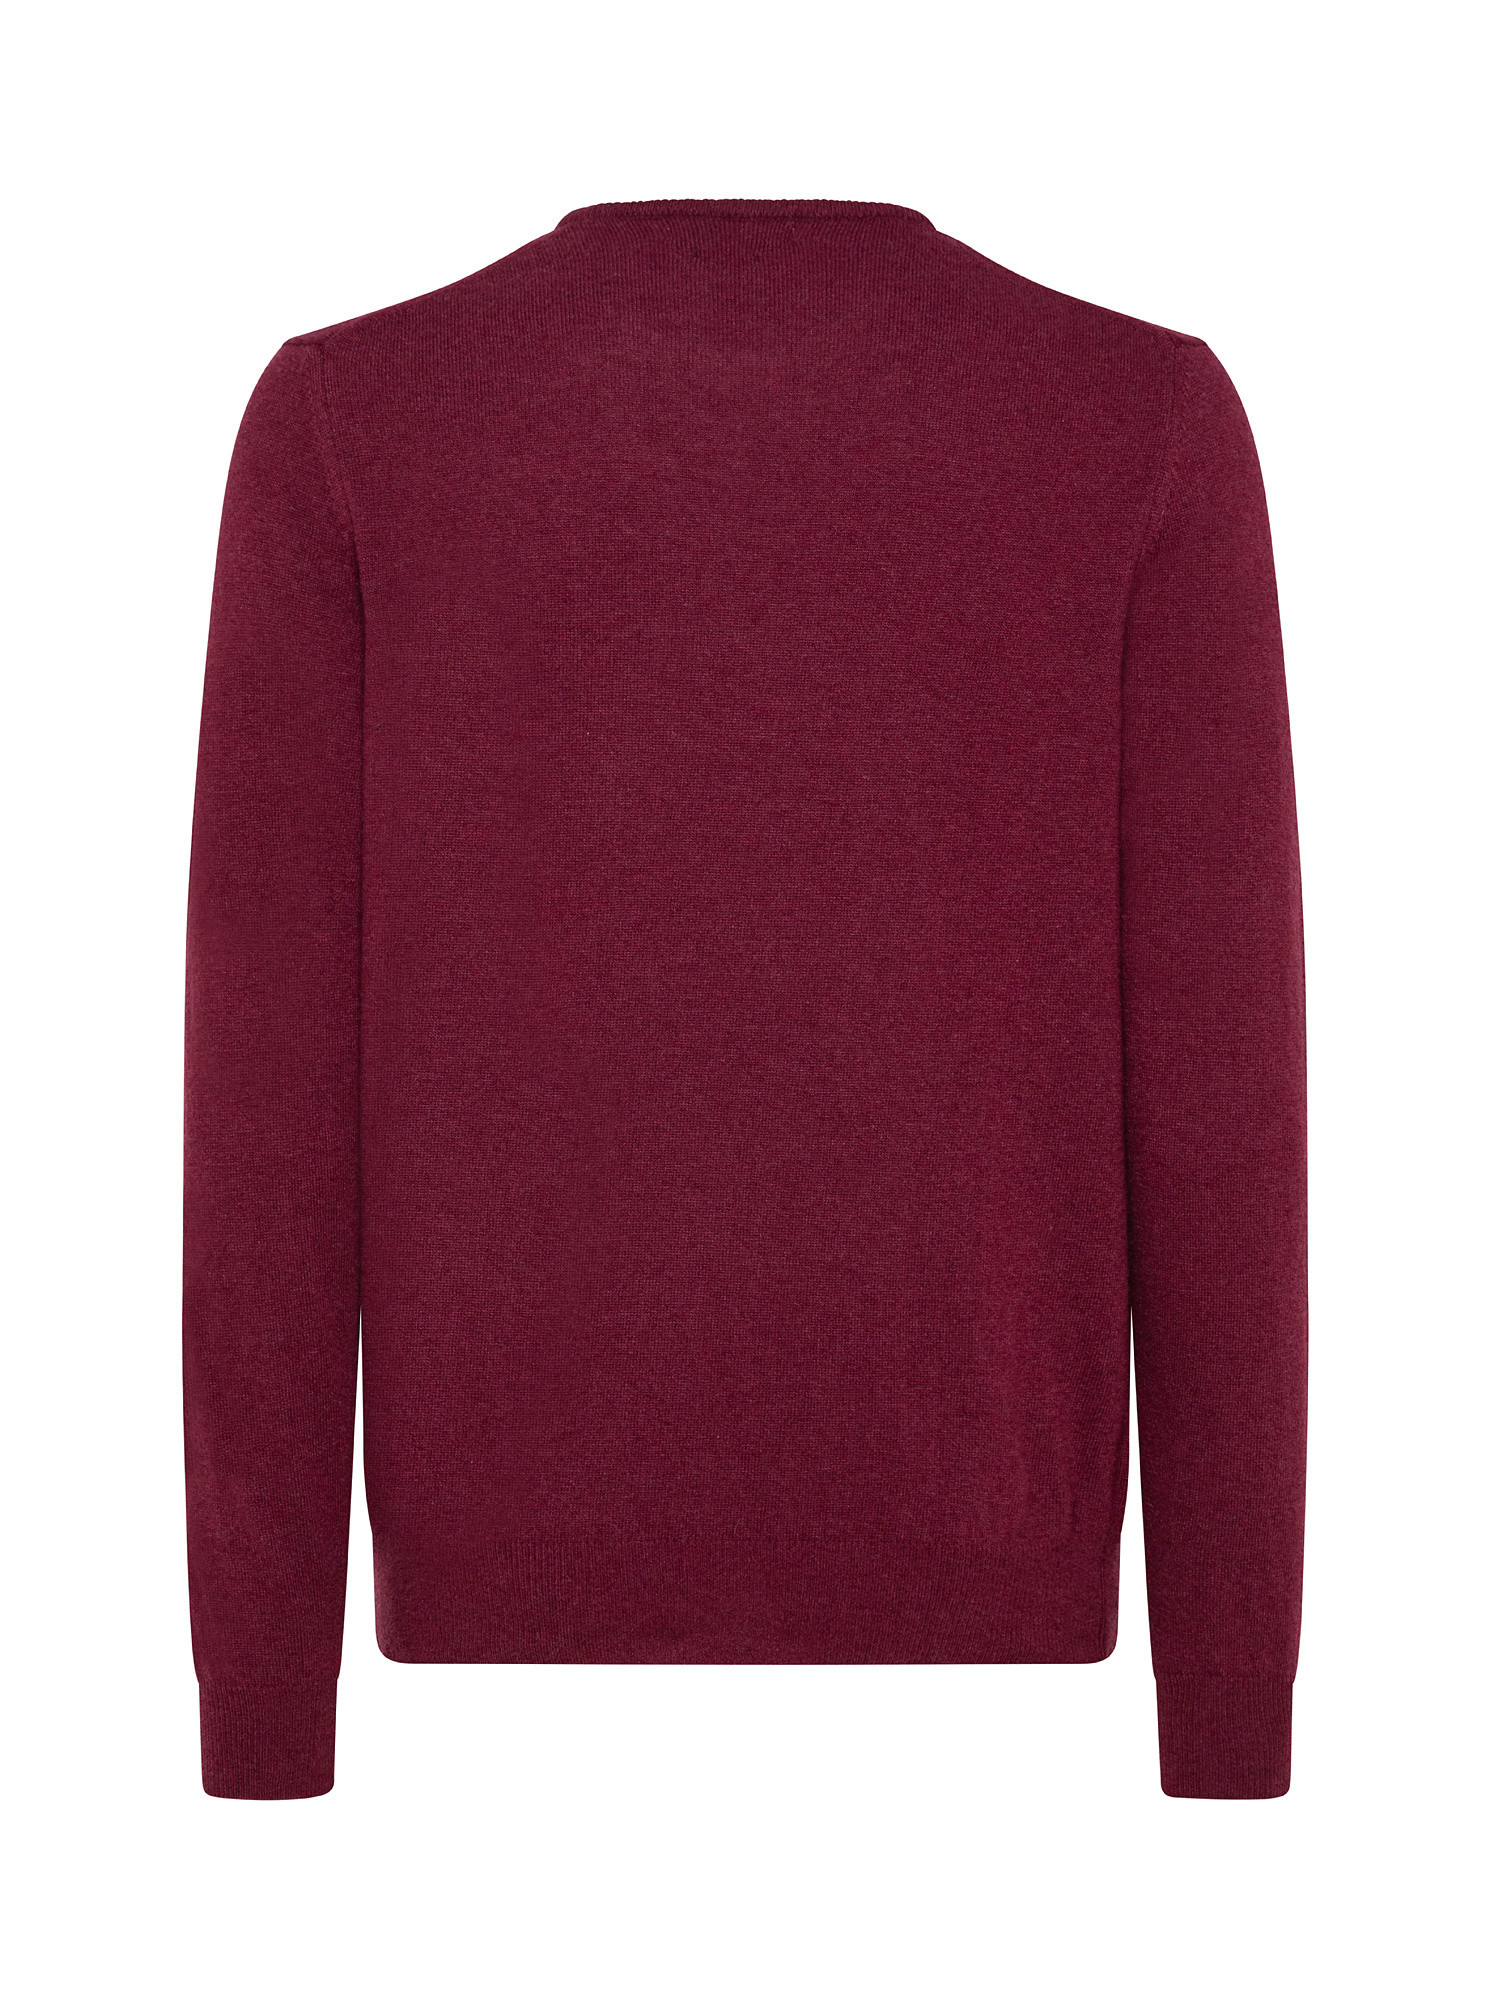 Basic cashmere blend pullover, Red, large image number 1